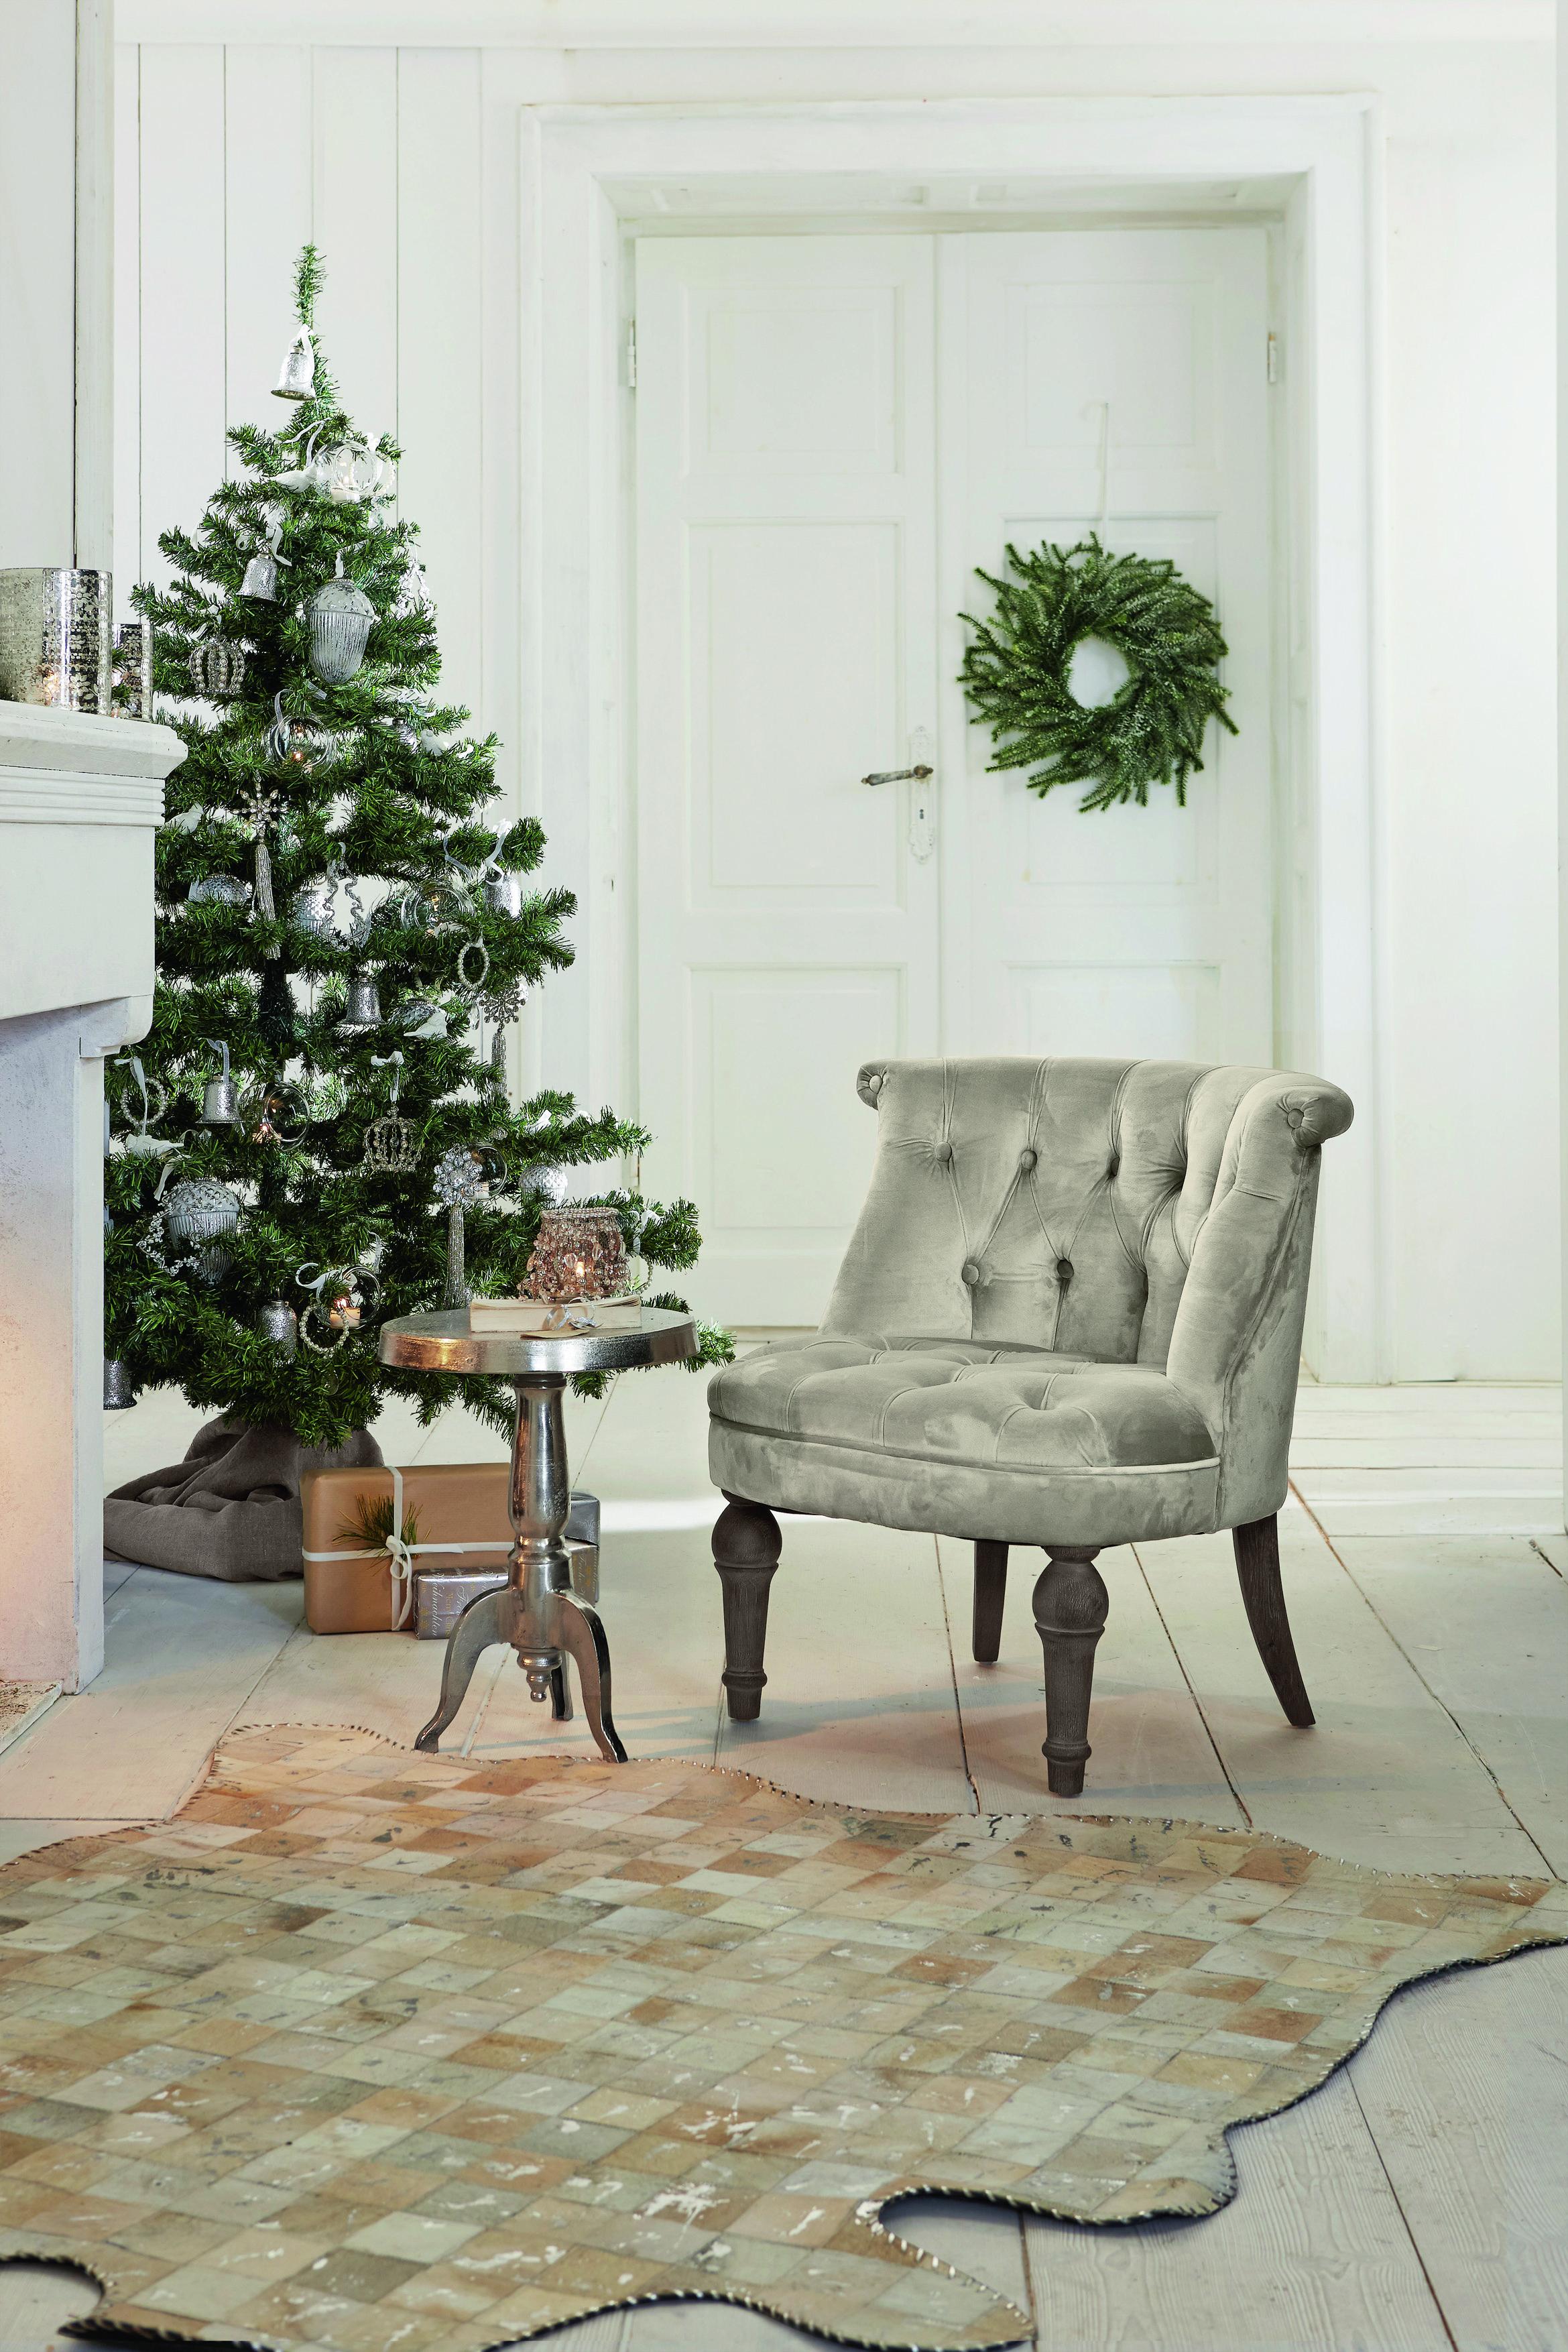 Außergewöhnlicher Baumschmuck in edlem silber #beistelltisch #sessel #windlicht #weihnachtsdeko ©LOBERON